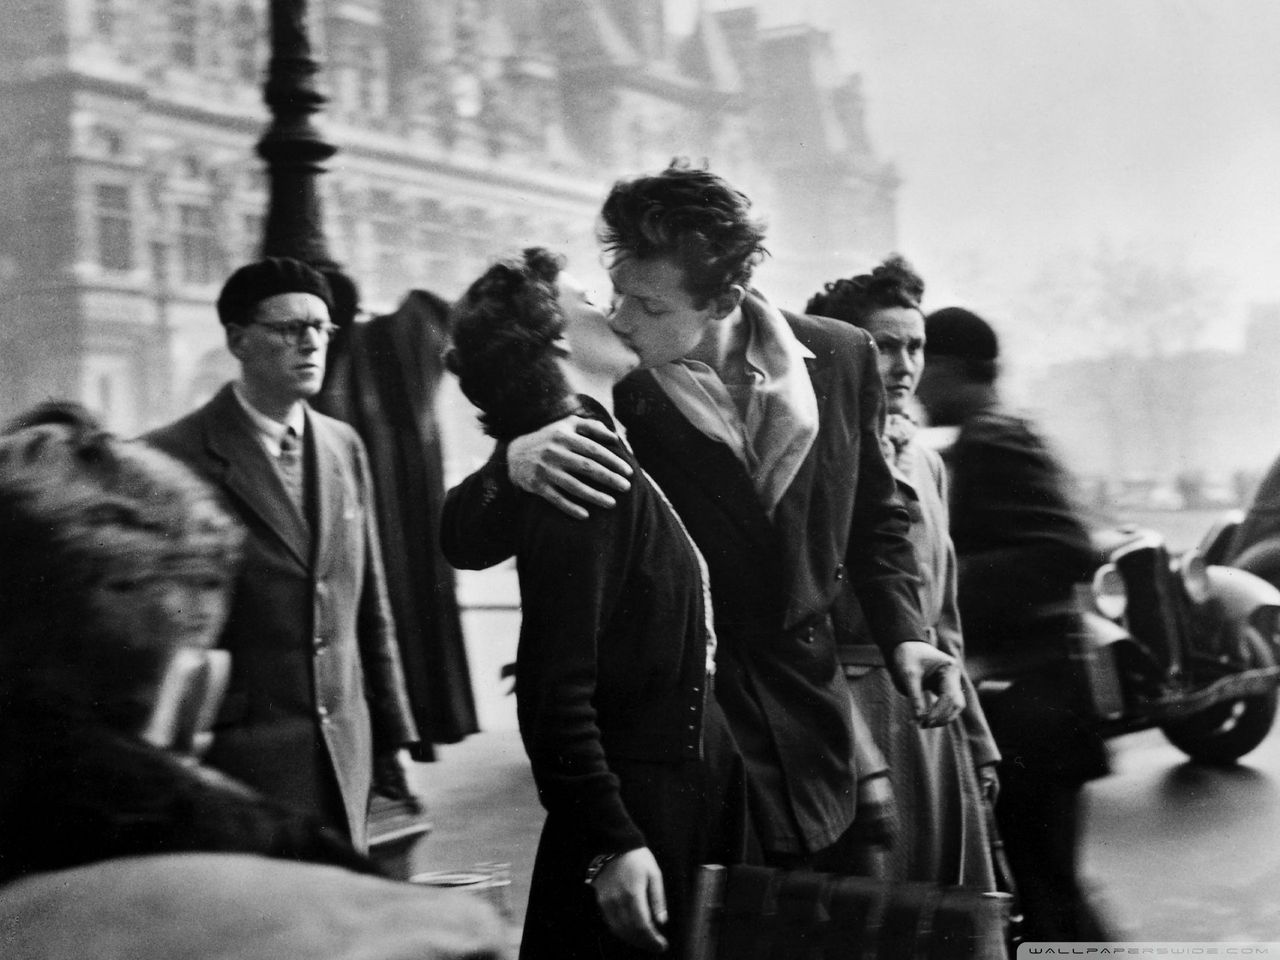 Najbardziej znane zdjęcie ”uliczne” Roberta Doisneau zostało ustawione